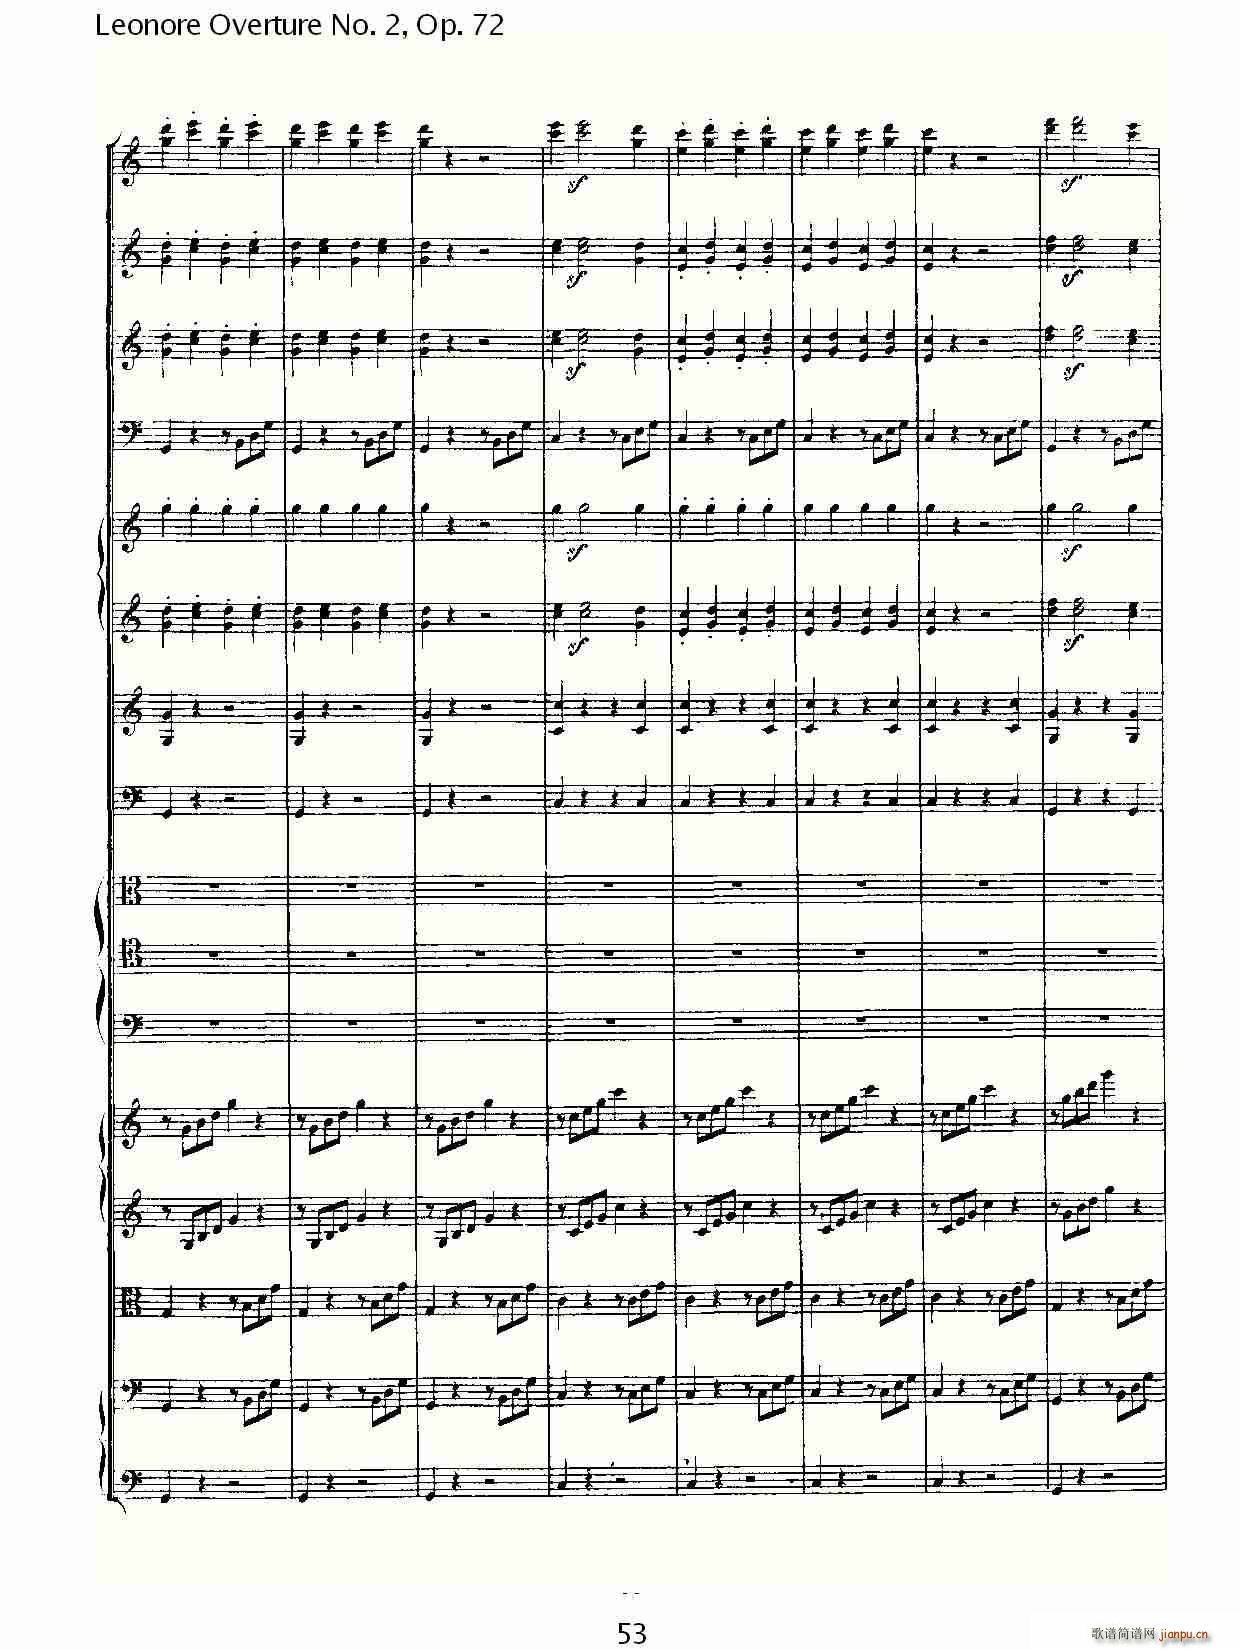 Leonore Overture No. 2Op. 72(ʮּ)13